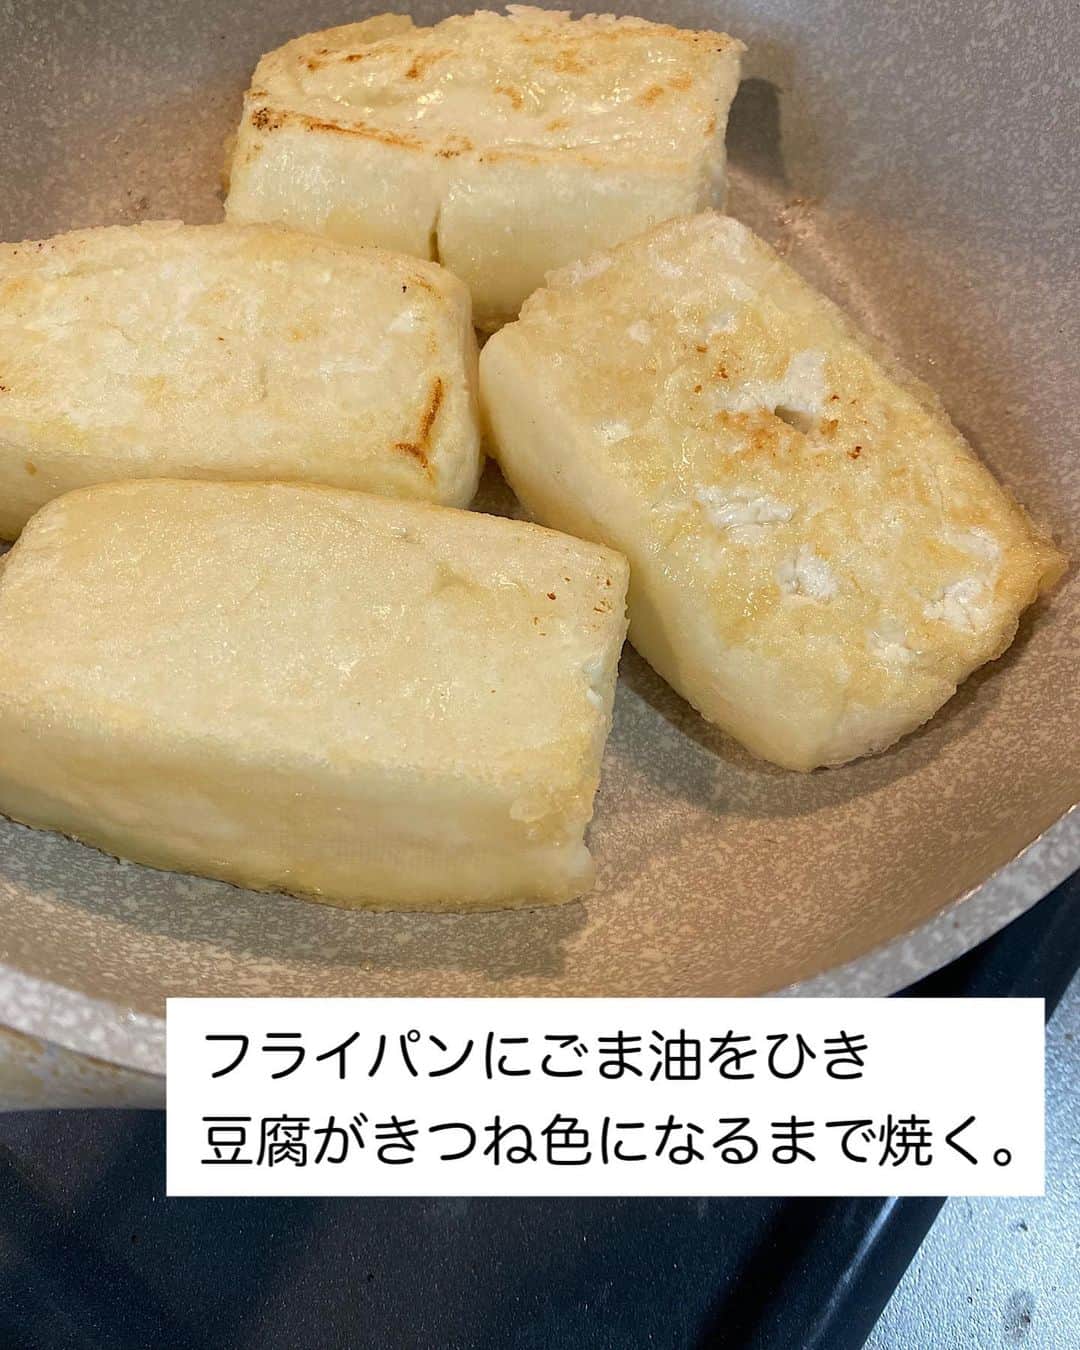 山本菜月さんのインスタグラム写真 - (山本菜月Instagram)「⁡ ⁡ ⁡ ⁡ ┈┈┈┈┈┈┈┈┈┈┈••✼ 旨いのにヘルシー！ あんかけ豆腐ステーキ ┈┈┈┈┈┈┈┈┈┈┈••✼ ⁡ ⁡ ⁡ こんにちは☀︎ 菜月(@zubora_meshi_ )です🐻 ⁡ 今日はとってもヘルシーかつ美味しい♡ しっかりお腹にたまる一品をご紹介します📝 ⁡ 豆腐の水切りはレンジで簡単に 済ませます💡✨ ⁡ 豆腐崩れを防ぐコツもご紹介していますので 是非最後までご覧ください🤲 ⁡ ⁡ ⁡ ｡.ꕤ⌒⌒⌒⌒⌒⌒ꕤ⌒⌒⌒⌒⌒⌒ꕤ.｡ ⁡ ⁡ ⁡ 【材料1人分】 木綿豆腐 1丁 ごま油 大さじ1 片栗粉 適宜 小葱 適量 鰹節 適量 ★しょうゆ 大さじ1 ★みりん 小さじ2 ★砂糖 小さじ1/2 ★生姜チューブ 小さじ1 ⁡ ⁡ 【作り方】 ①豆腐をキッチンペーパー2枚使い包み 　お皿に乗せてラップなし600w2分〜2分半 　加熱する。 ②①の水気をふきとり4等分し片栗粉をまぶす。 ③フライパンにごま油をひき②を入れ 　きつね色になるまで焼く。 ④★をまわし入れ、とろみがつけば完成。 ⁡ ⁡ 【調理ポイント📝】 ・豆腐は3分加熱すると崩れました。 ・片栗粉をたっぷりまぶすと 　形崩れが防げます。 ・葱、鰹節との相性◎ ⁡ ⁡ ⁡ ｡.ꕤ⌒⌒⌒⌒⌒⌒ꕤ⌒⌒⌒⌒⌒⌒ꕤ.｡ ⁡ ⁡ ⁡ ⁡ 📙書籍タイトル ┈┈┈┈┈┈┈┈┈┈┈┈┈┈┈┈┈┈ もはや動けないって時はこれつくろ! とびきり美味しい疲れ果てごはん ┈┈┈┈┈┈┈┈┈┈┈┈┈┈┈┈┈┈ ⁡ ⁡ ⁡ 🌼発売日  : 2023年9月27日(水) 　ご予約後、上記の日付にお届けされます。 ⁡ ⁡ ⁡ 🚗ご予約  : Amazon・楽天ブックスにて開始中 ⁡ ⁡ ⁡ 🔍ご予約方法  :  わたしのプロフィールリンク 　もしくはハイライト【書籍ご予約】に 　ご予約リンクを貼っています♩ ⁡ ⁡ ⁡ ⁡ 最後までご覧頂きありがとうございます。 是非、食レポを聞かせてくださると嬉しいです♡ ⁡ ＊NATSU KITCHEN ＊」9月6日 16時29分 - zubora_meshi_